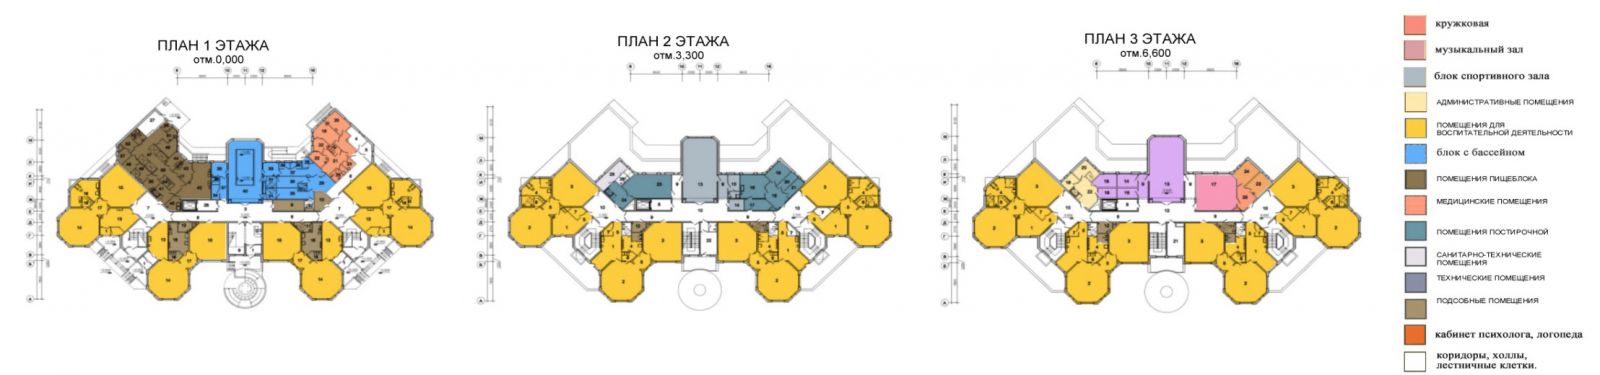 Katalog proyek tipikal bangunan infrastruktur sosial telah dibuat di wilayah Moskow